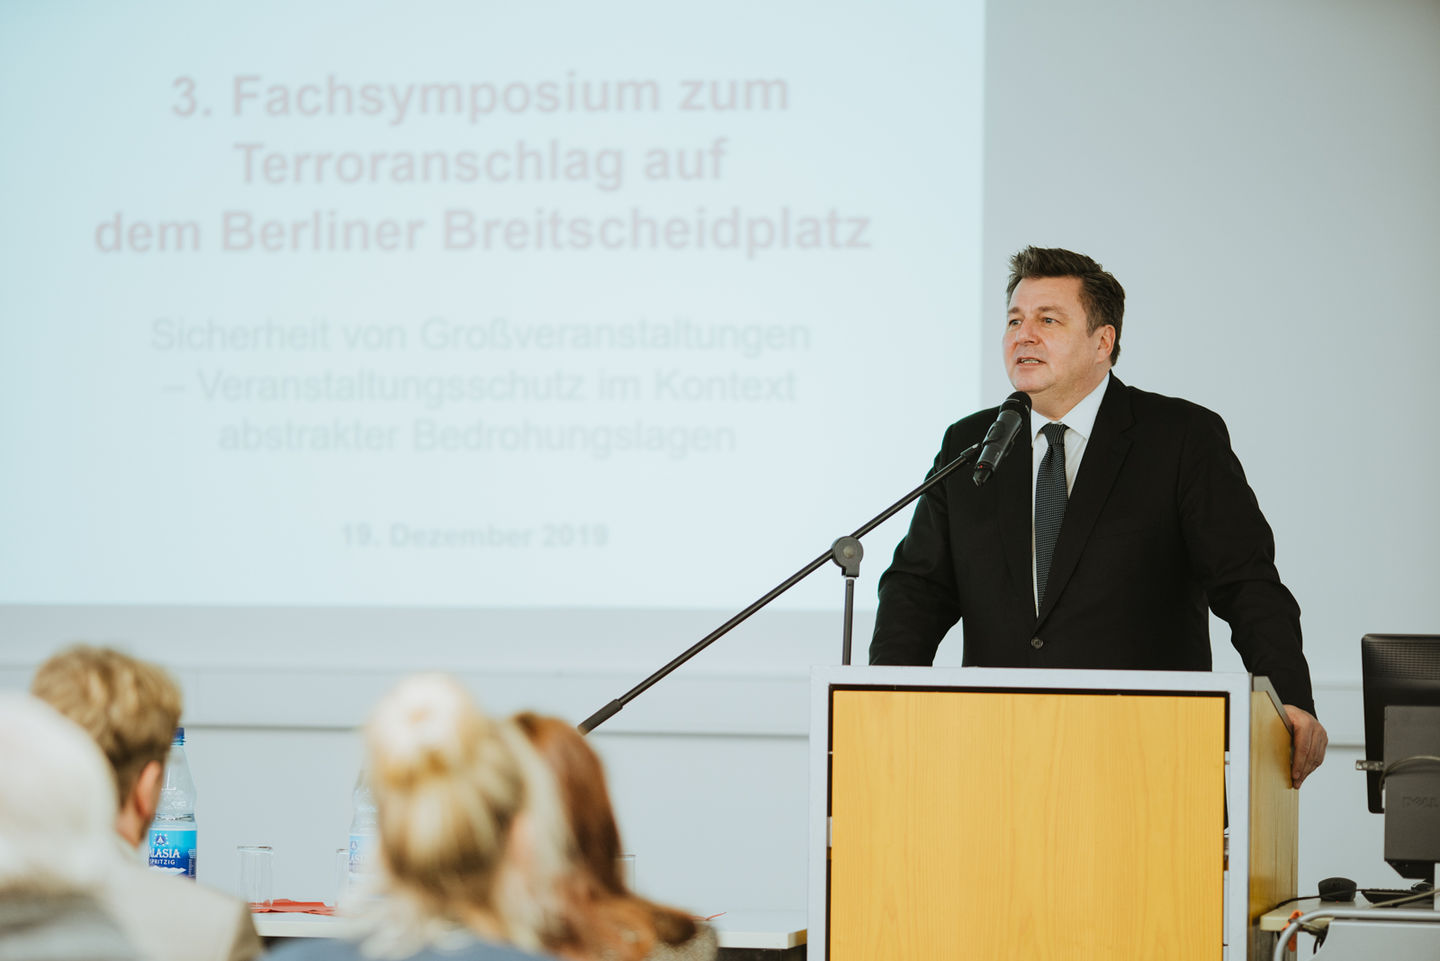 HWR Berlin: 3. Fachsymposium zum Terroranschlag auf den Berliner Breitscheidplatz am 19. Dezember 2019